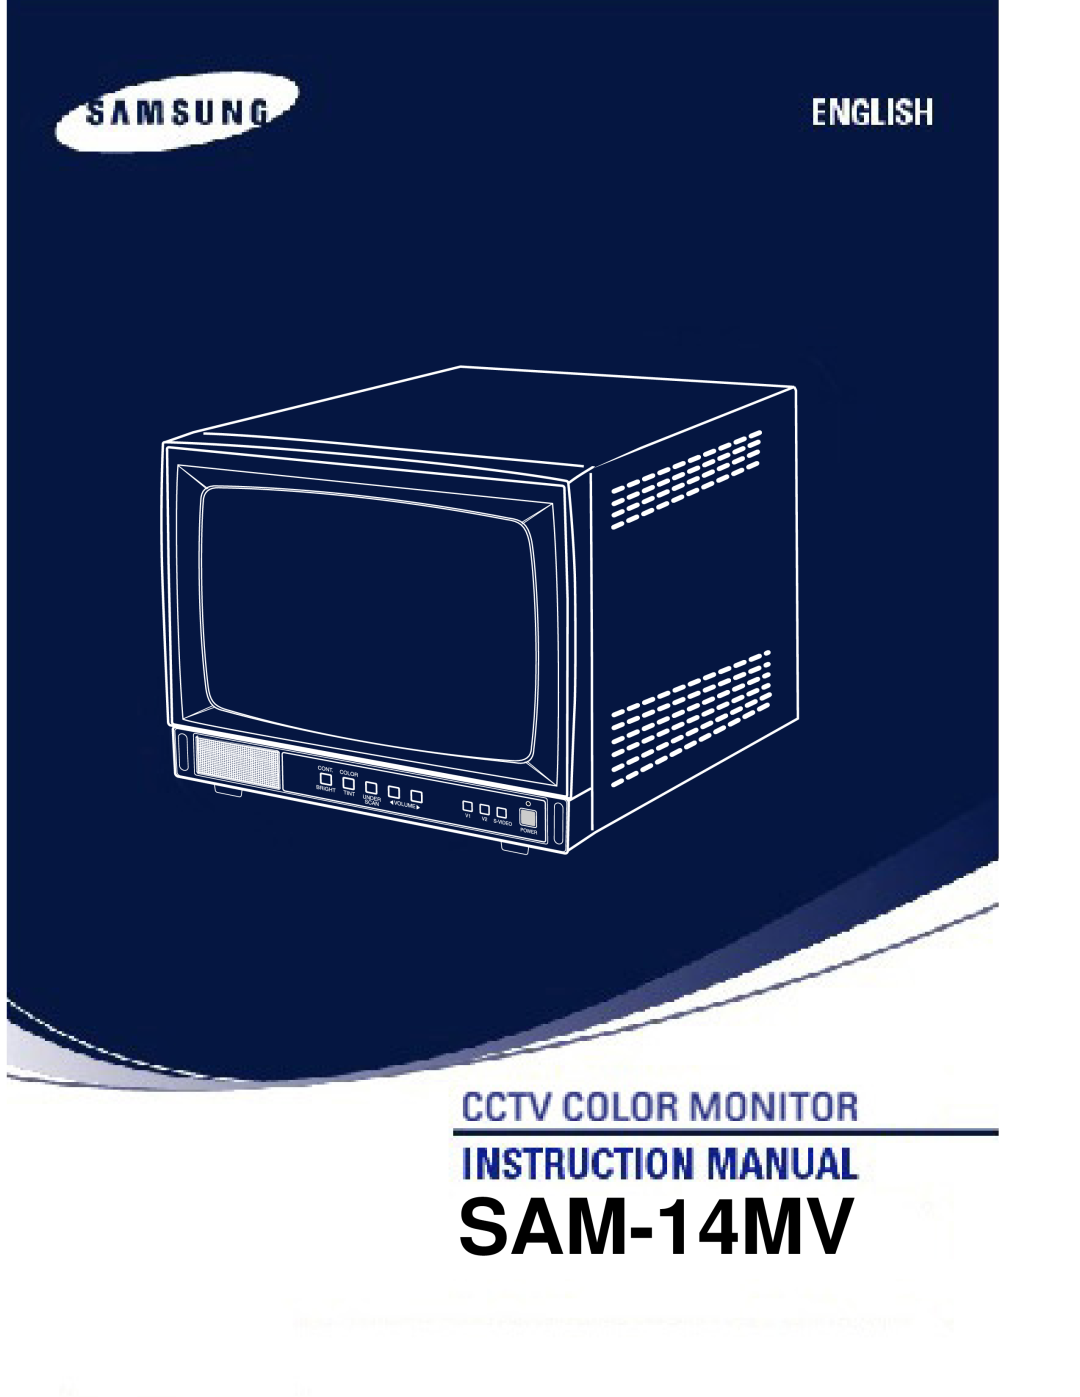 Samsung SAM-14MV manual 